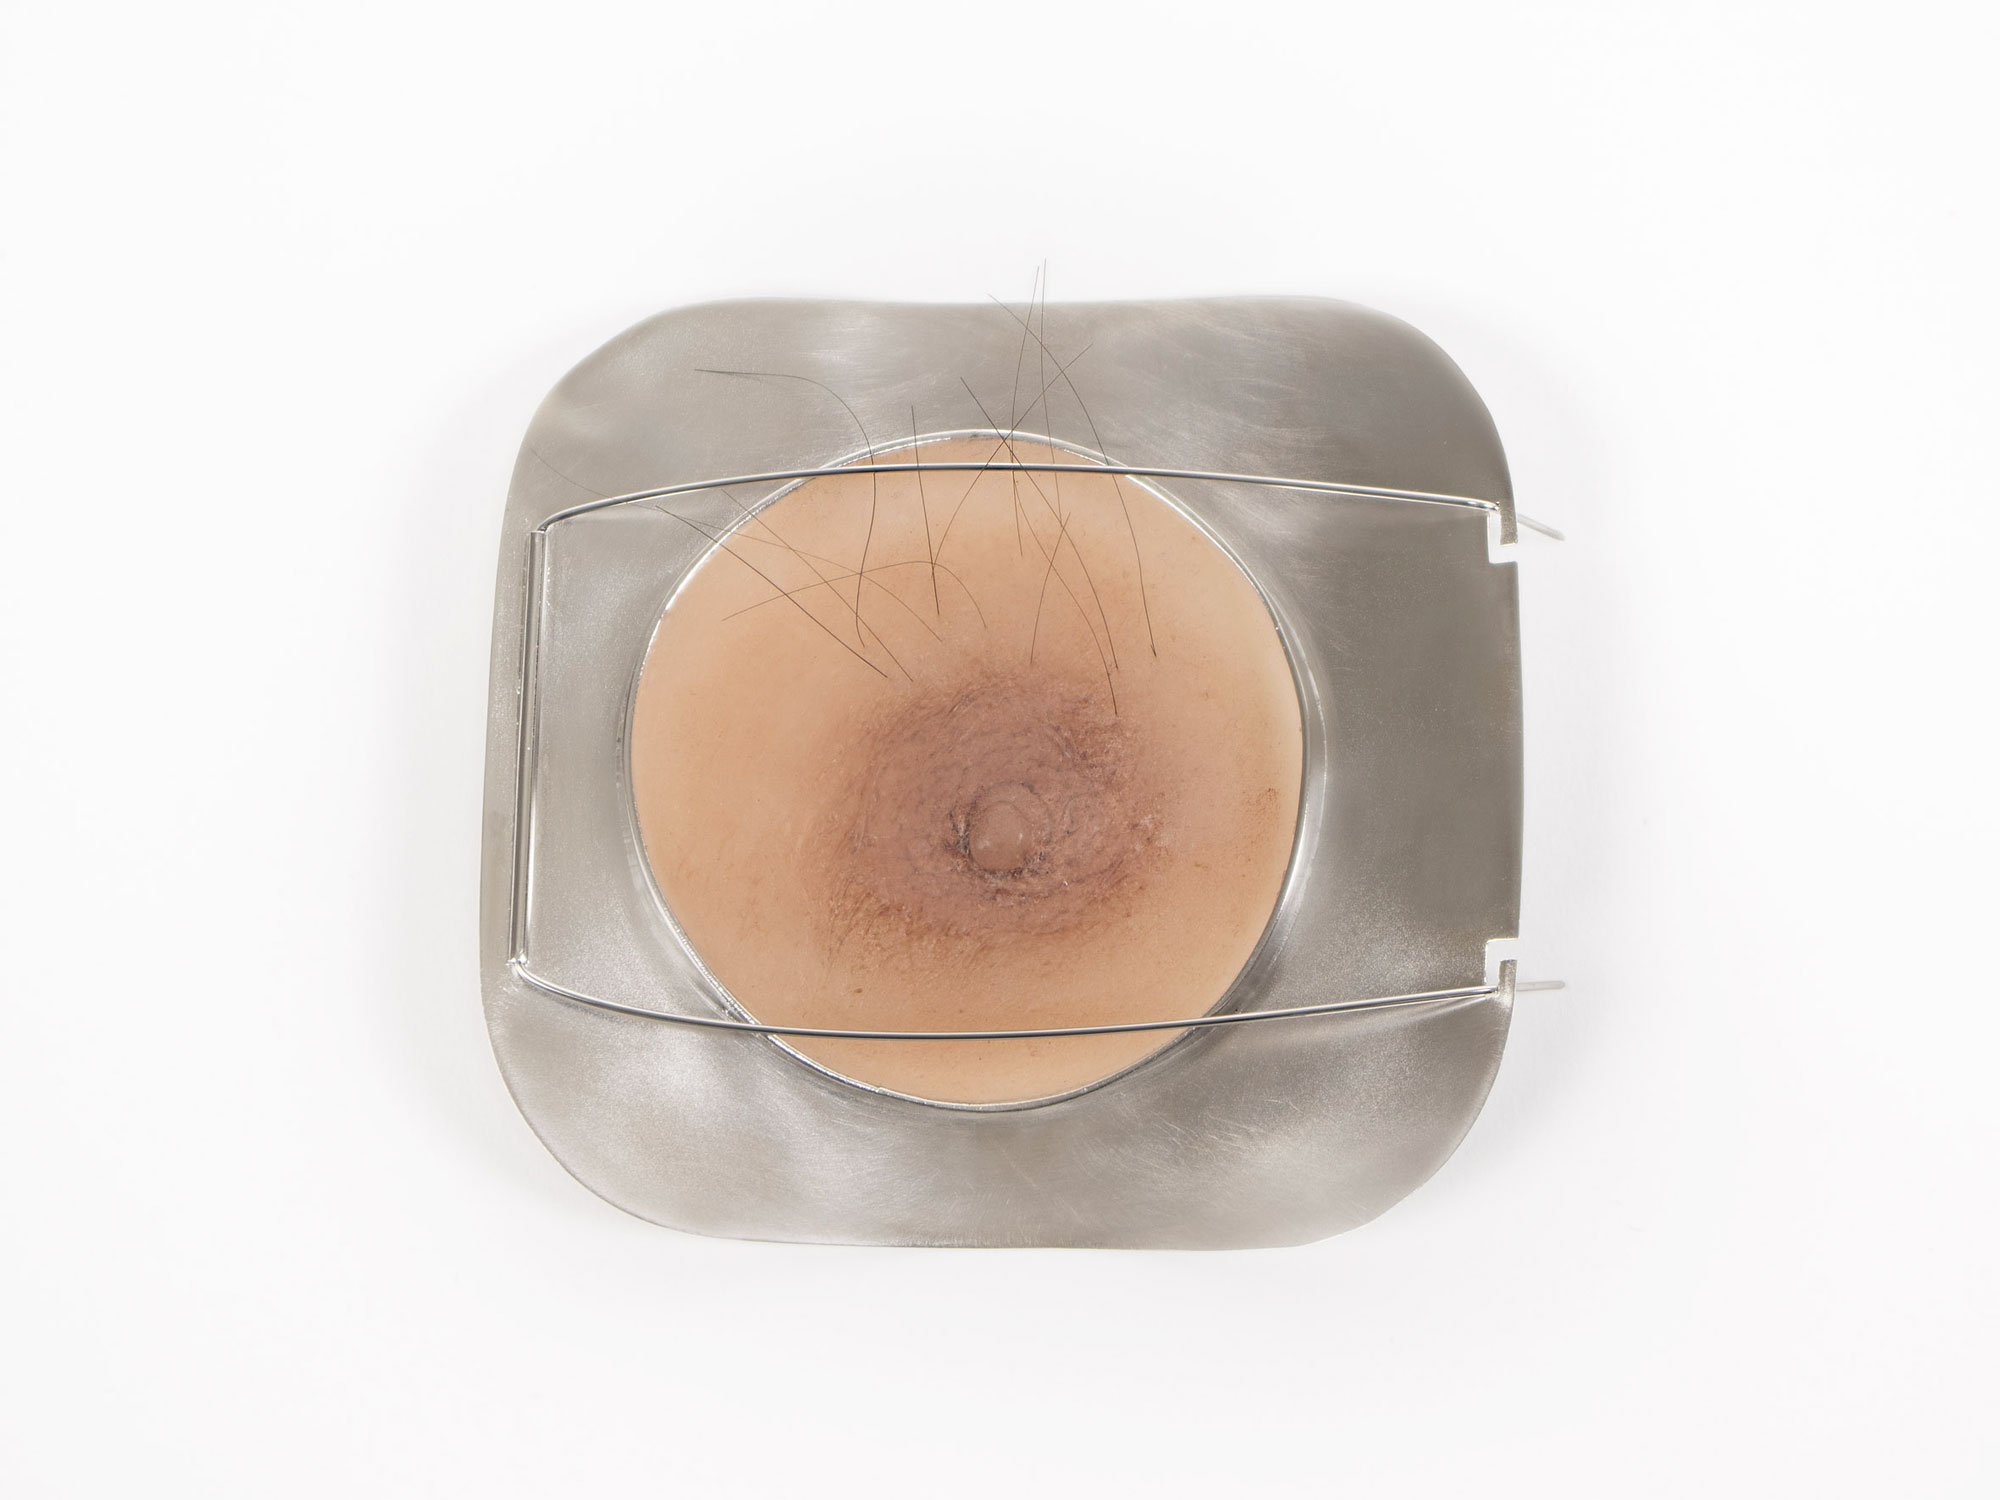 Une histoire au masculin - Broche téton. Argent 925, silicone et poil humain - 9,5 x 9cm - 2019 - Photo : Ludivine Schmidt. 